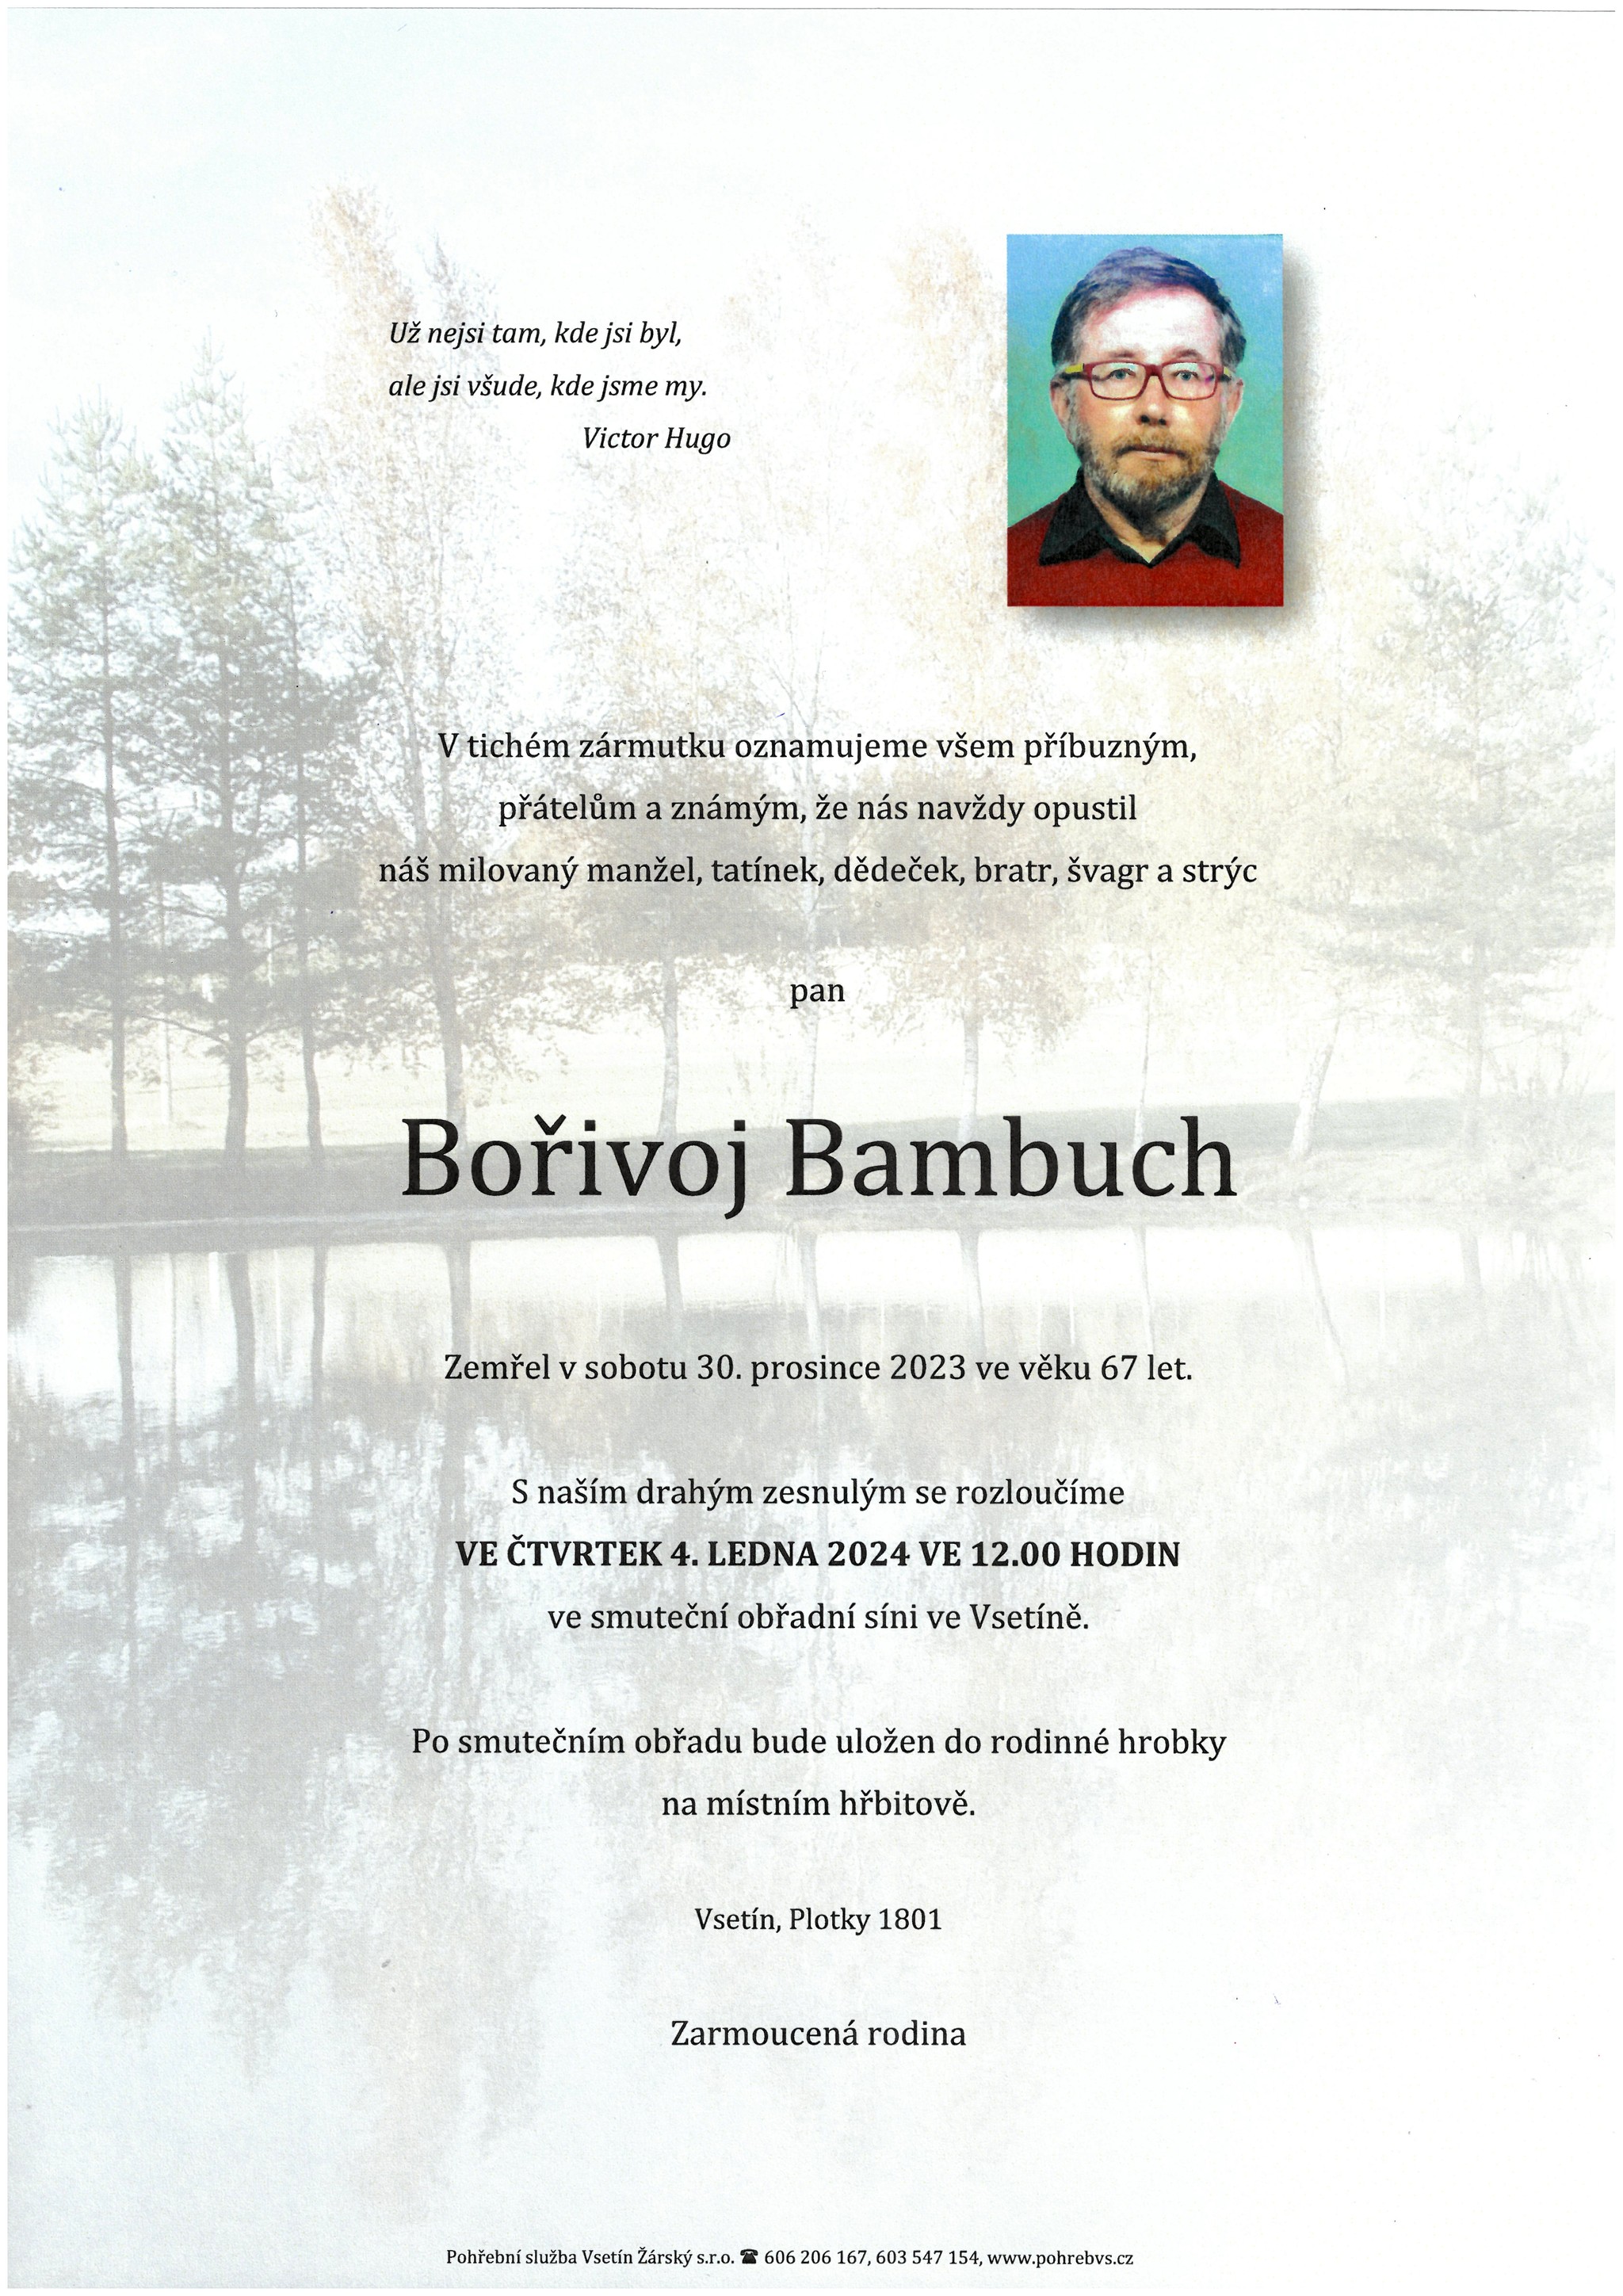 Bořivoj Bambuch